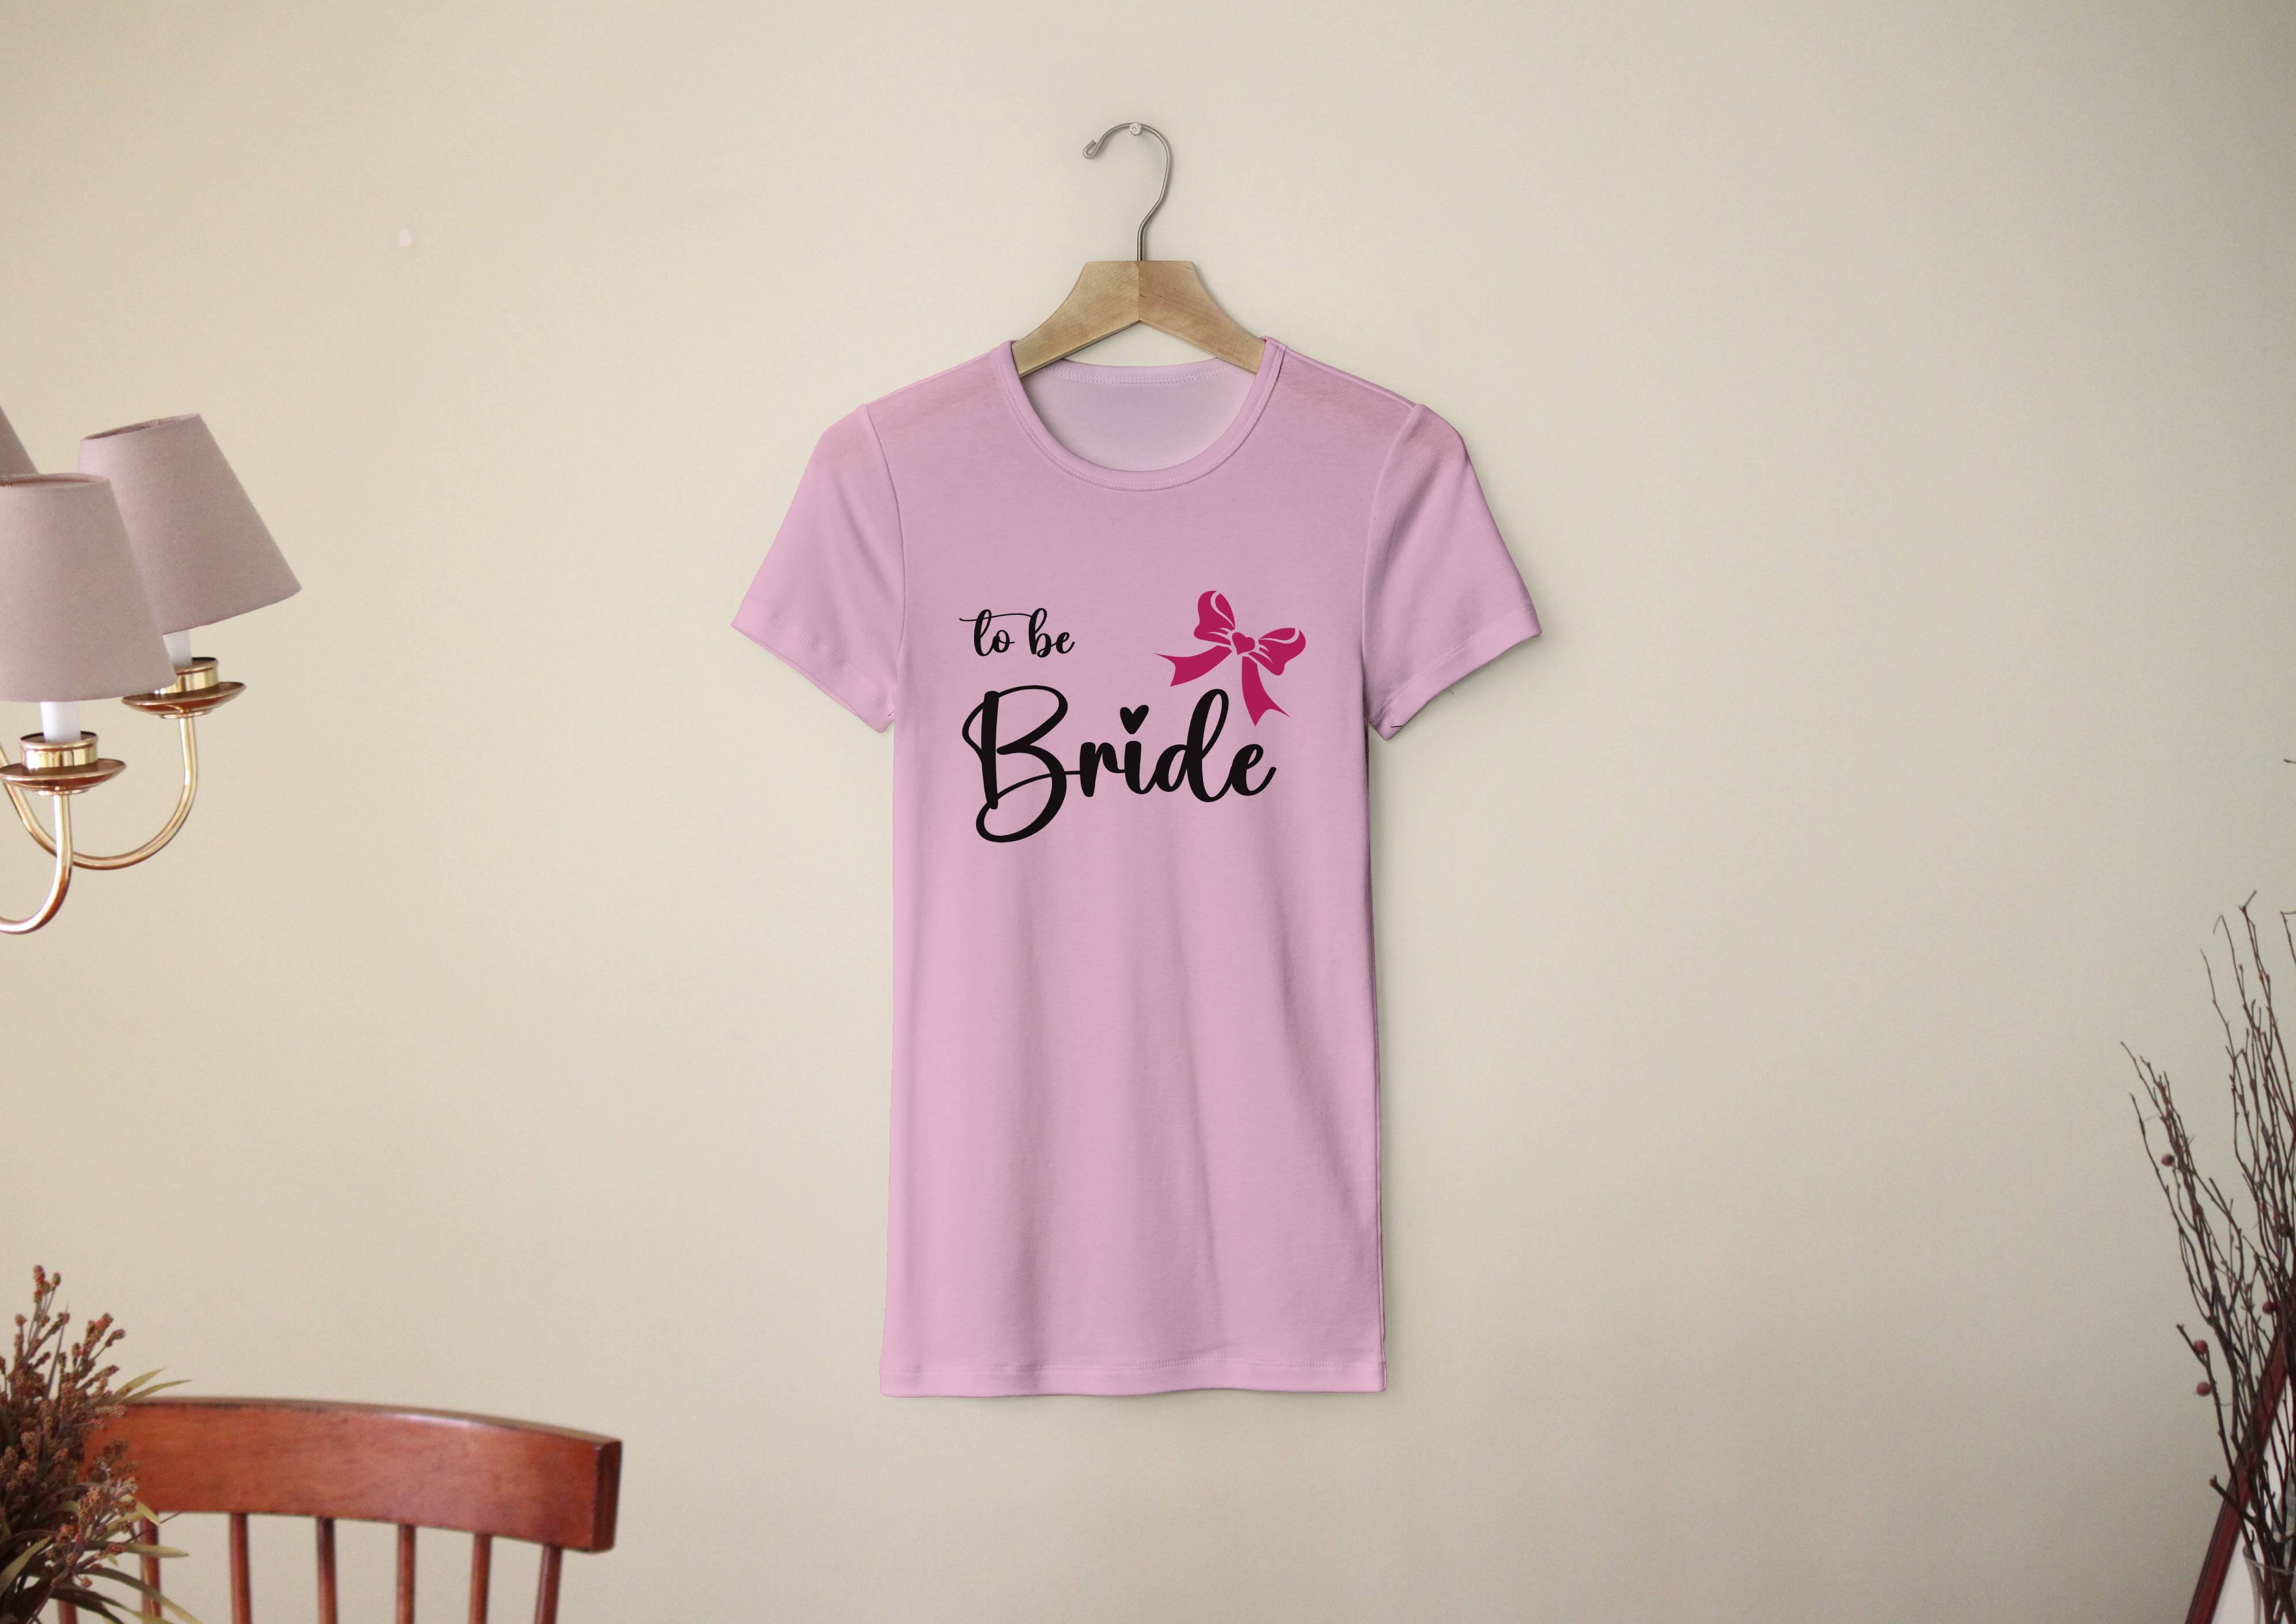 Personal Dámske tričko - Bride to be mašlička Farba: ružová, Veľkosť - dospelý: S